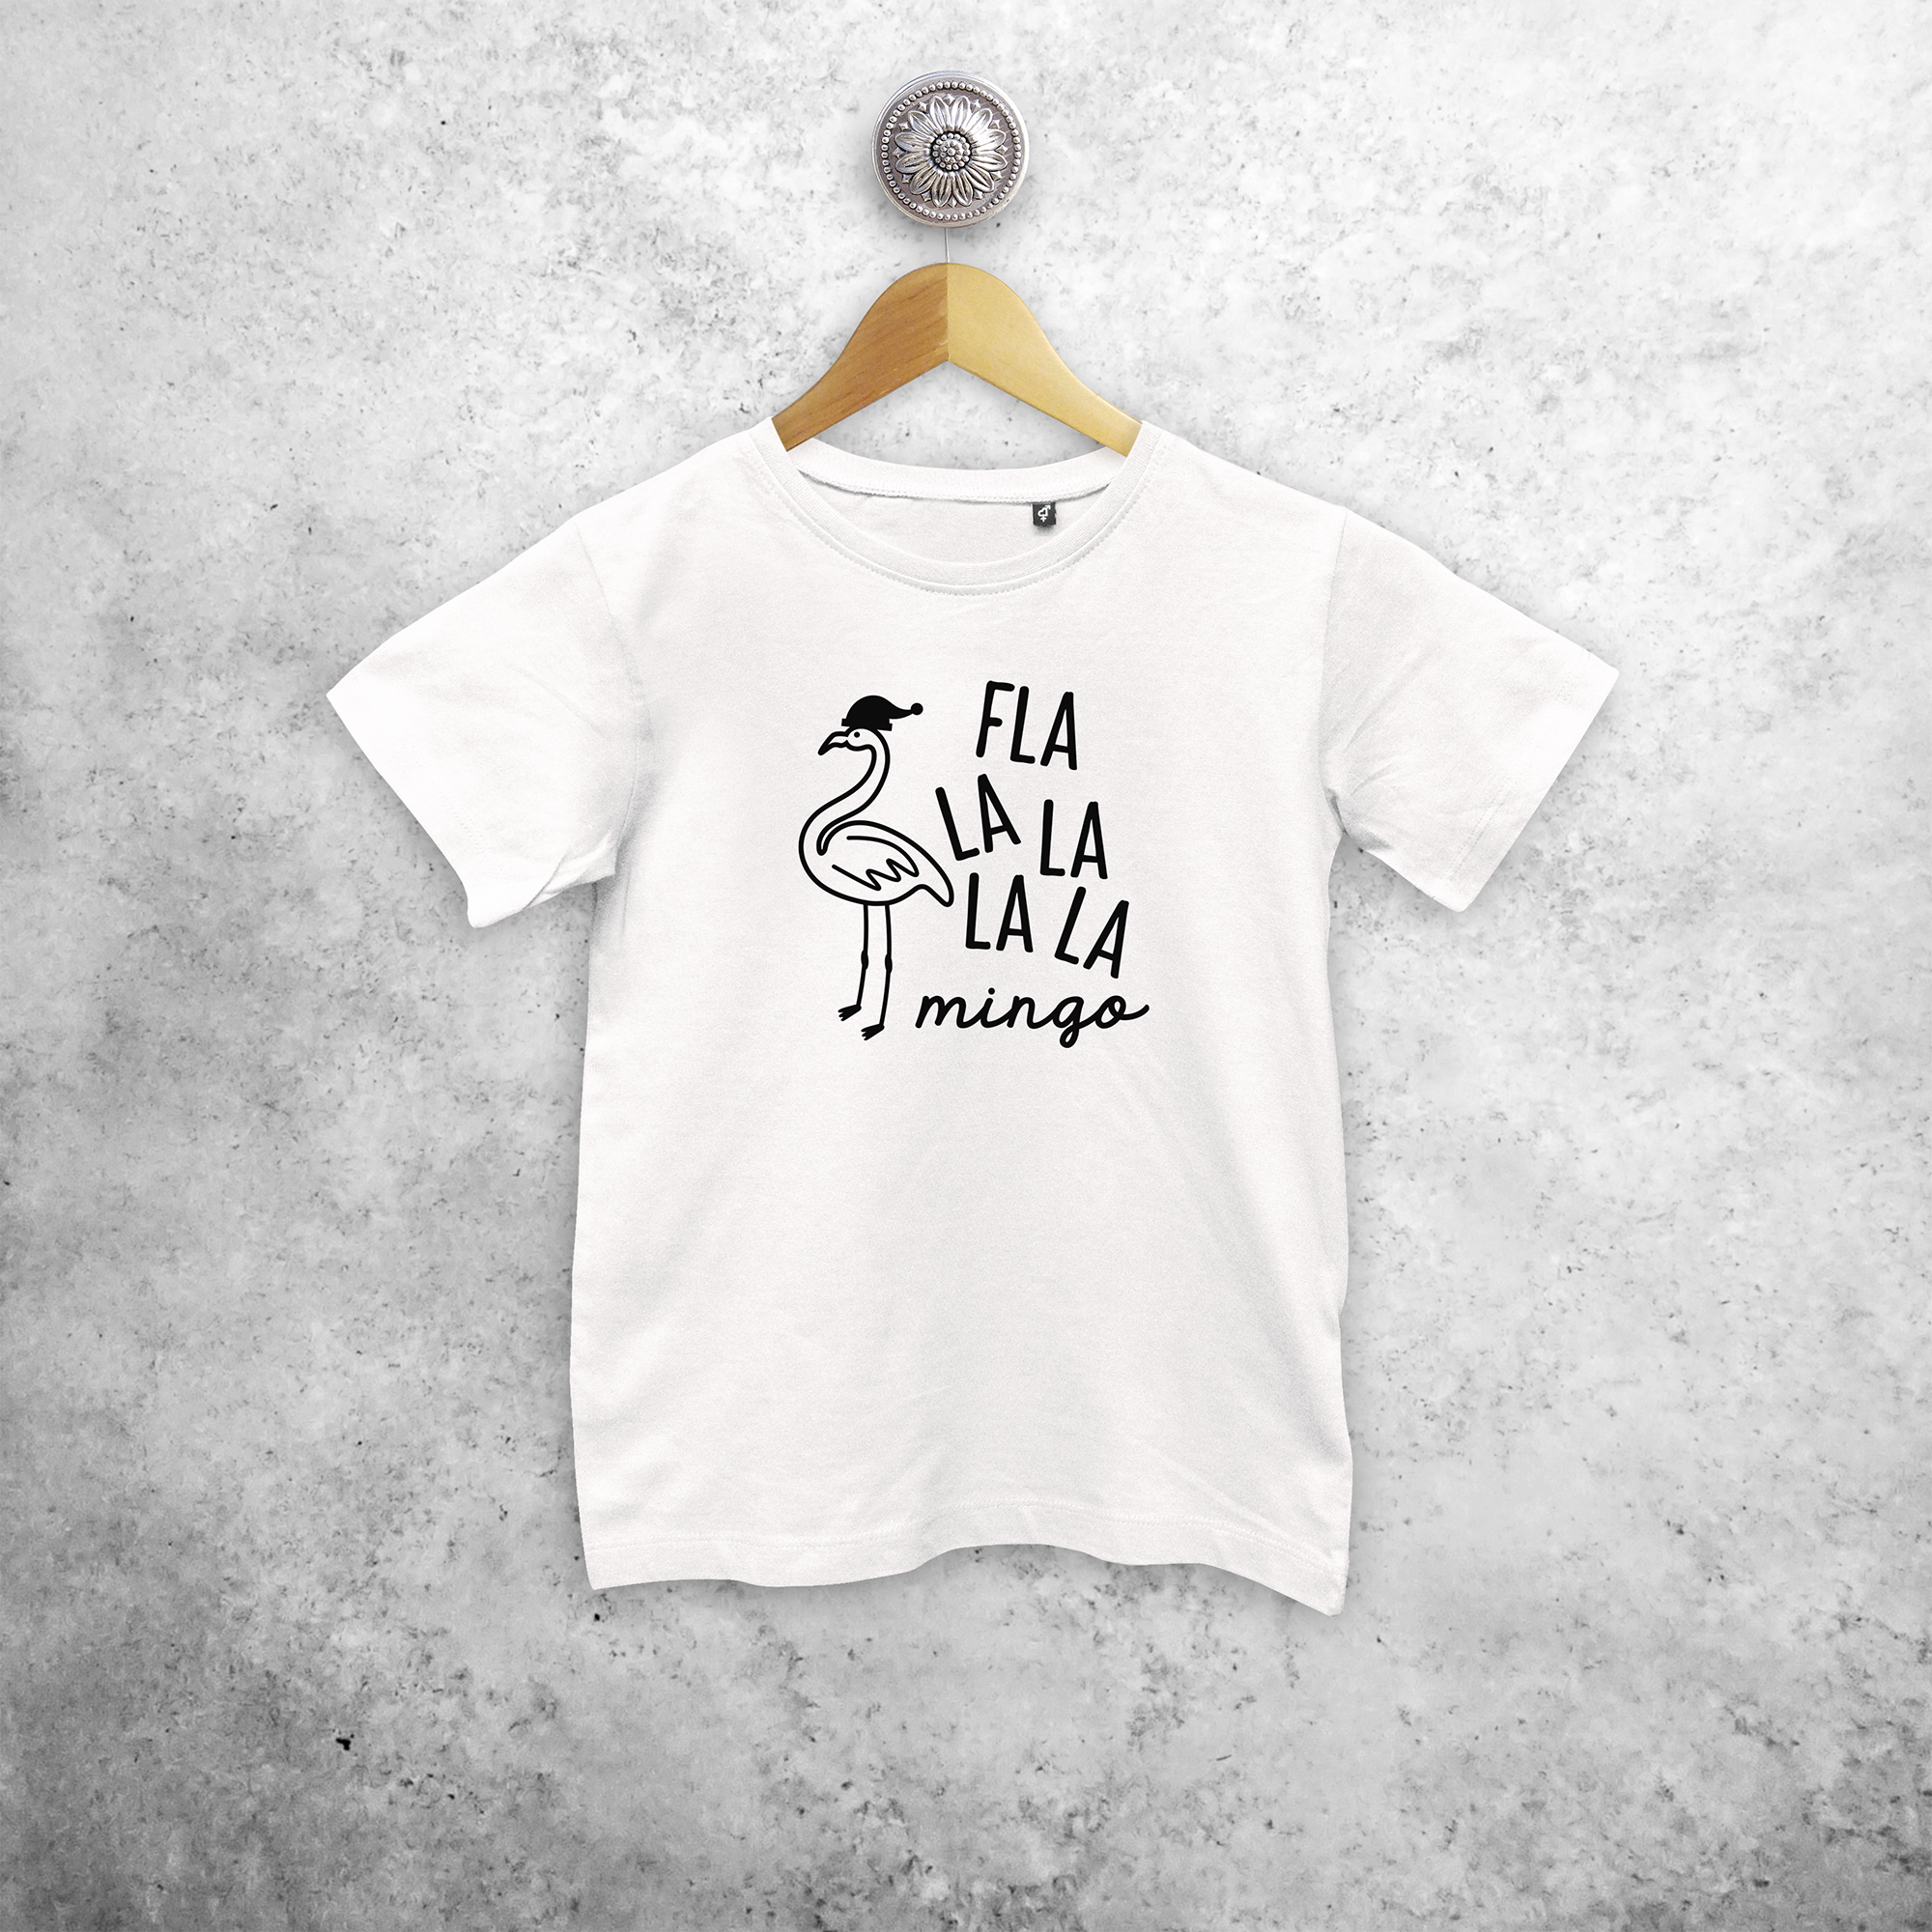 Kids shirt with short sleeves, with ‘Fla la la la la mingo’ print by KMLeon.